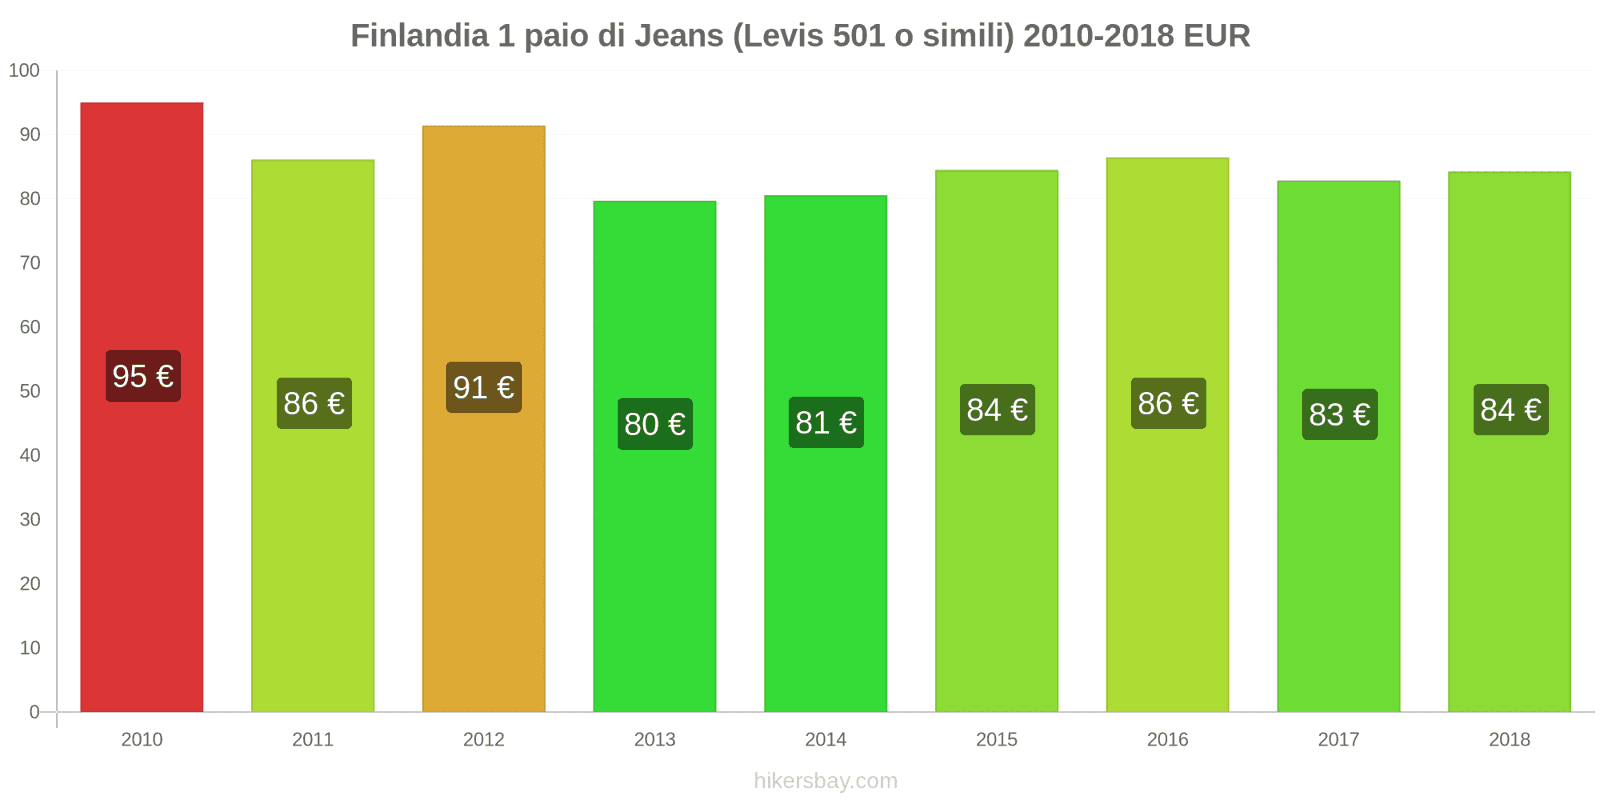 Finlandia cambi di prezzo 1 paio di jeans (Levis 501 o simili) hikersbay.com